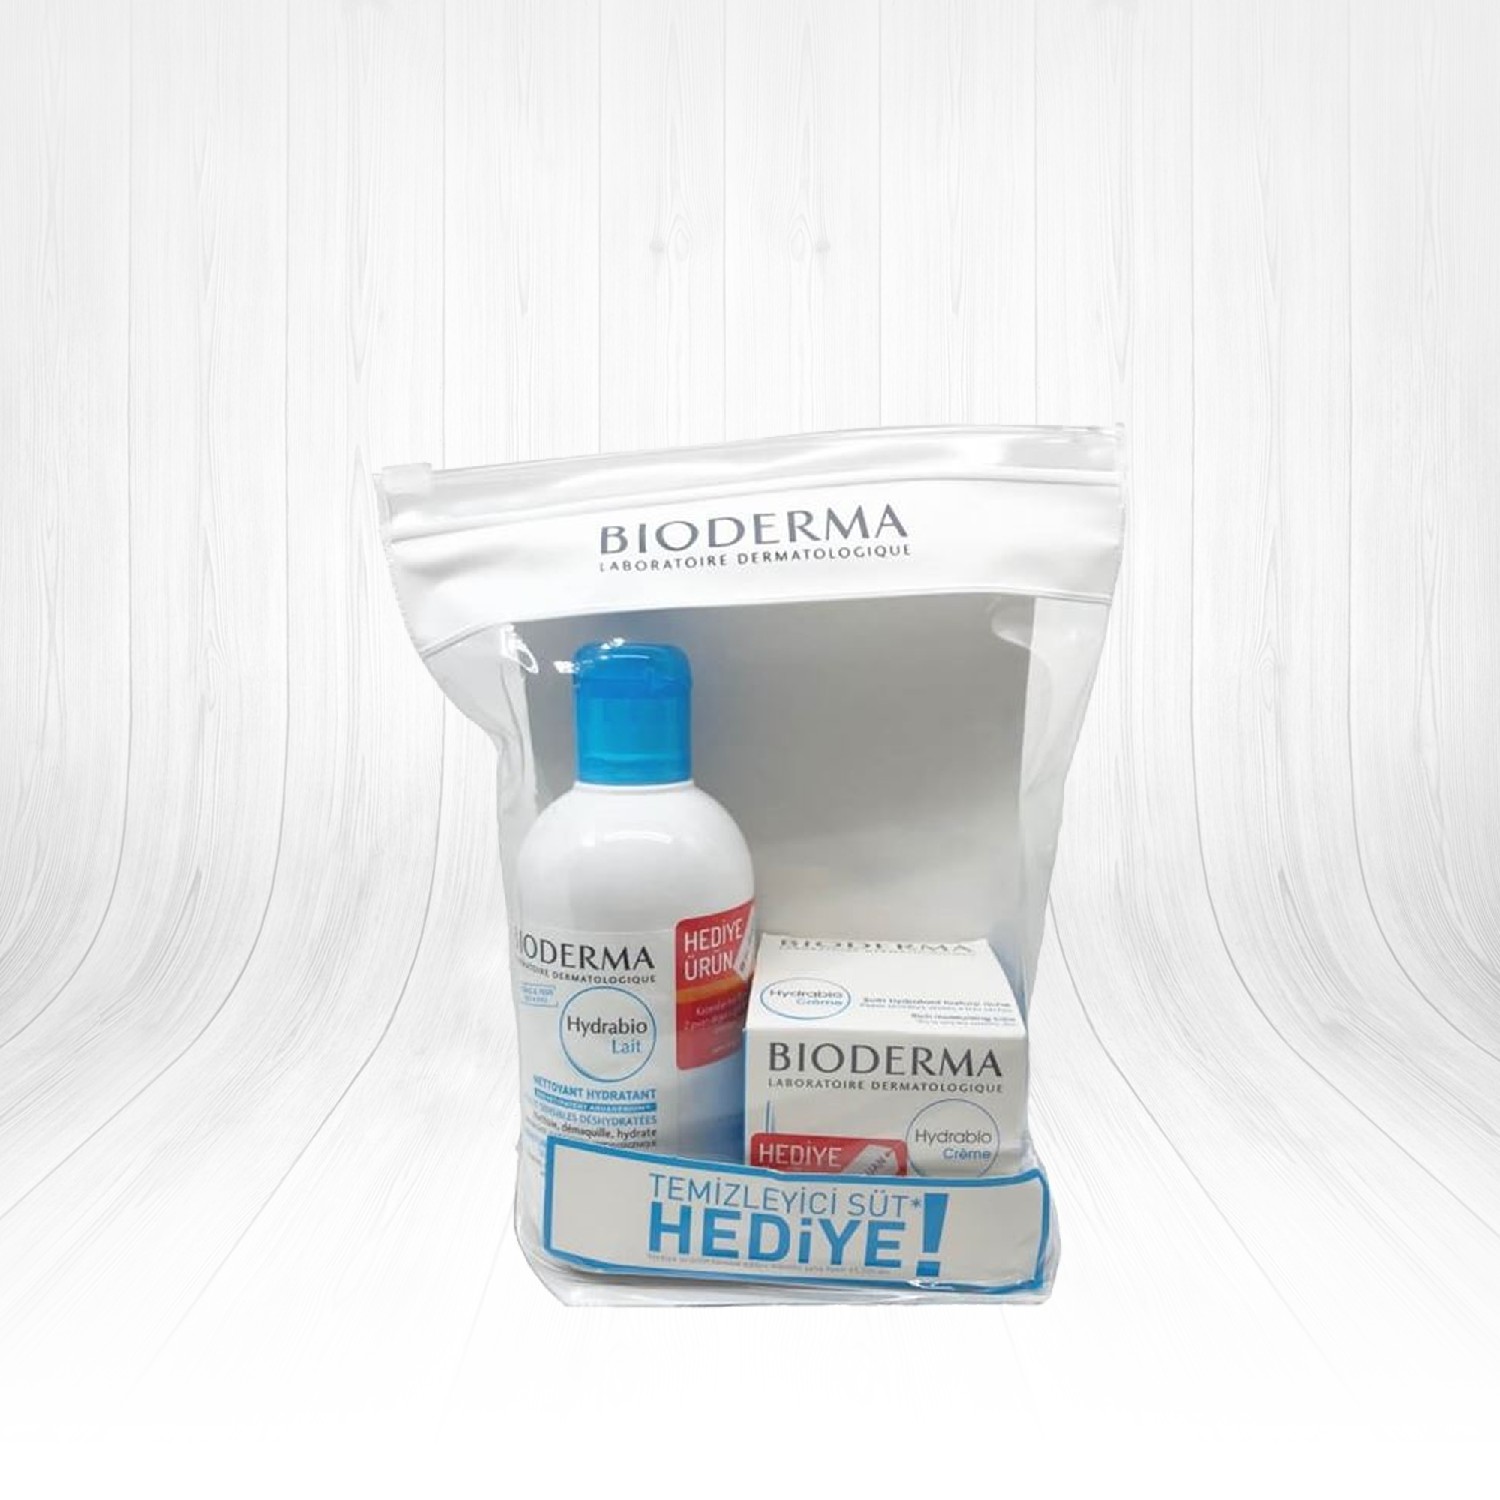 Bioderma Hydrabio Cream Kuru Ciltler İçin Neendirici Krem Hydrabio Lait Milky Cleanser li